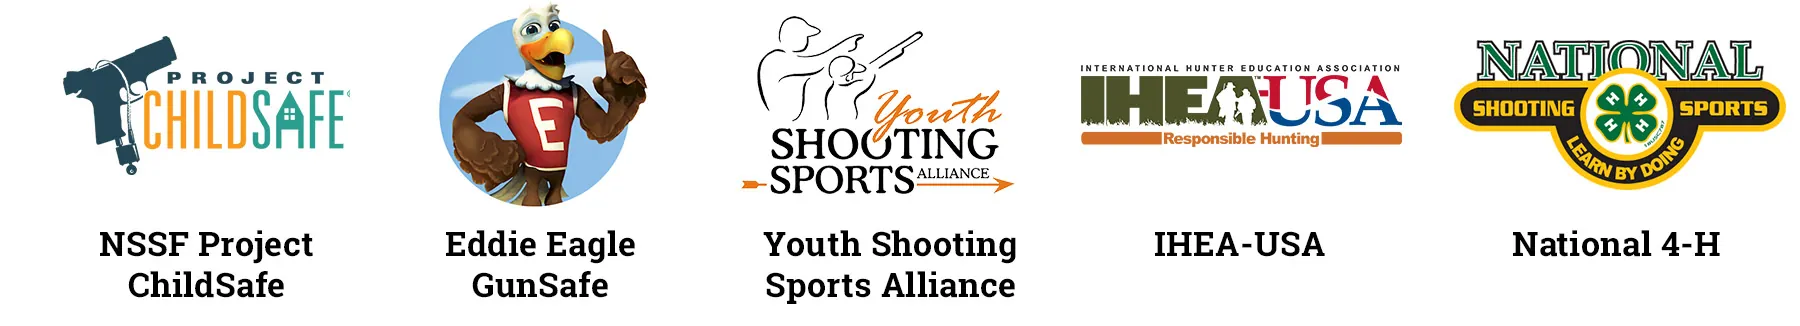 Youth Shooting logos